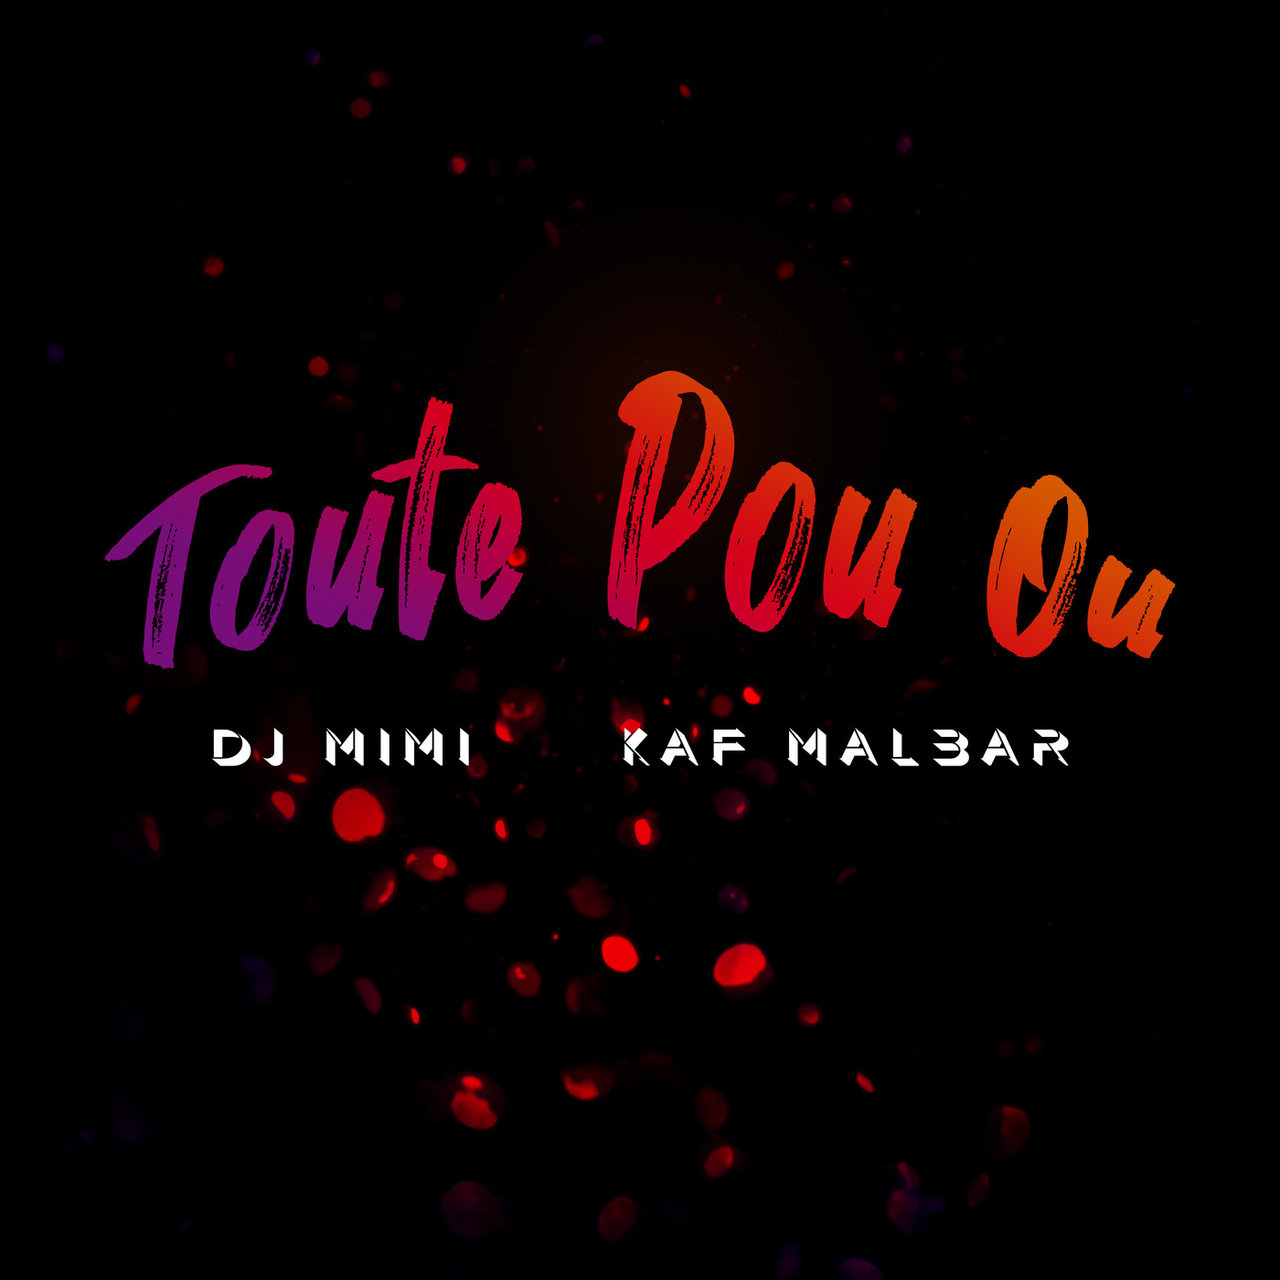 DJ Mimi and Kaf Malbar - Toute Pou Ou (Cover)